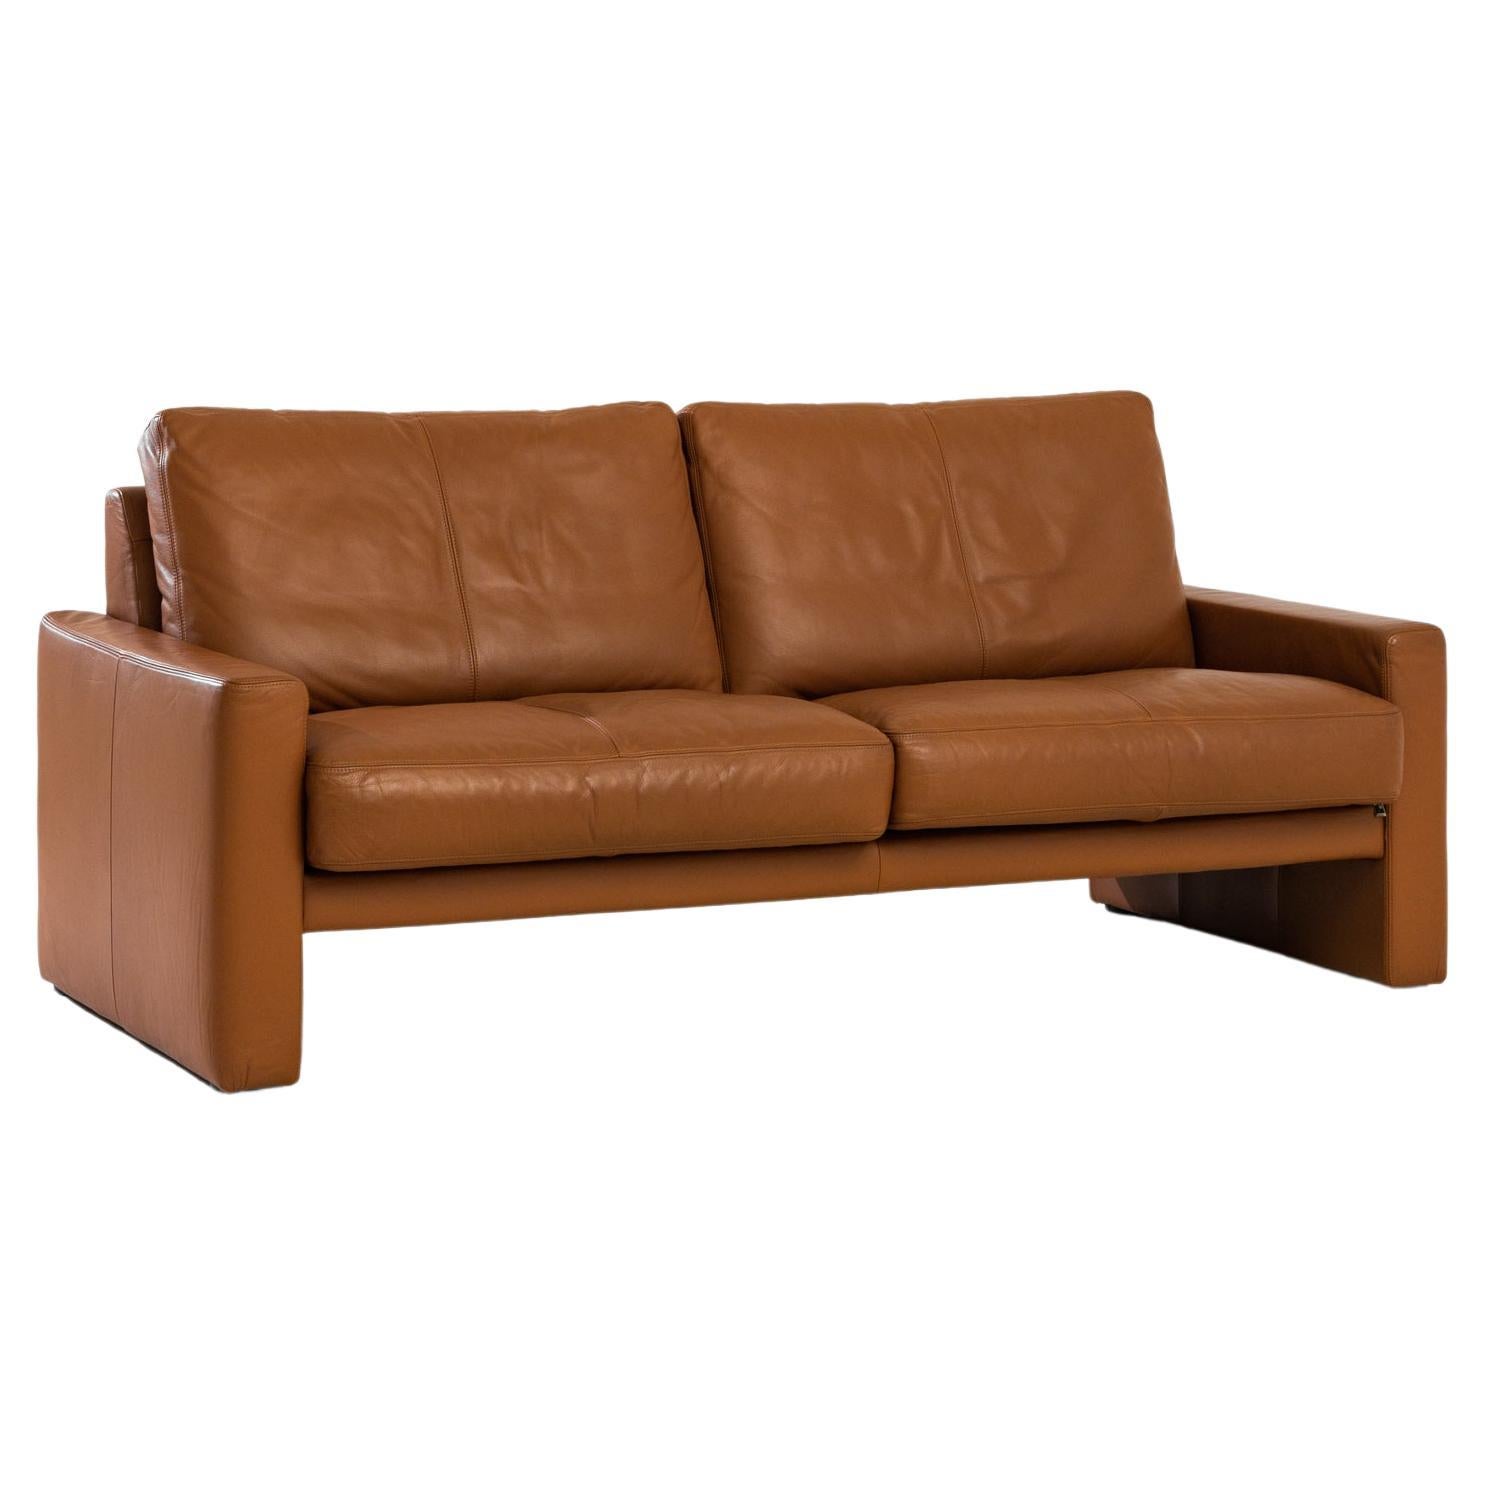 Vintage German Leather Sofa by WK Wohnen